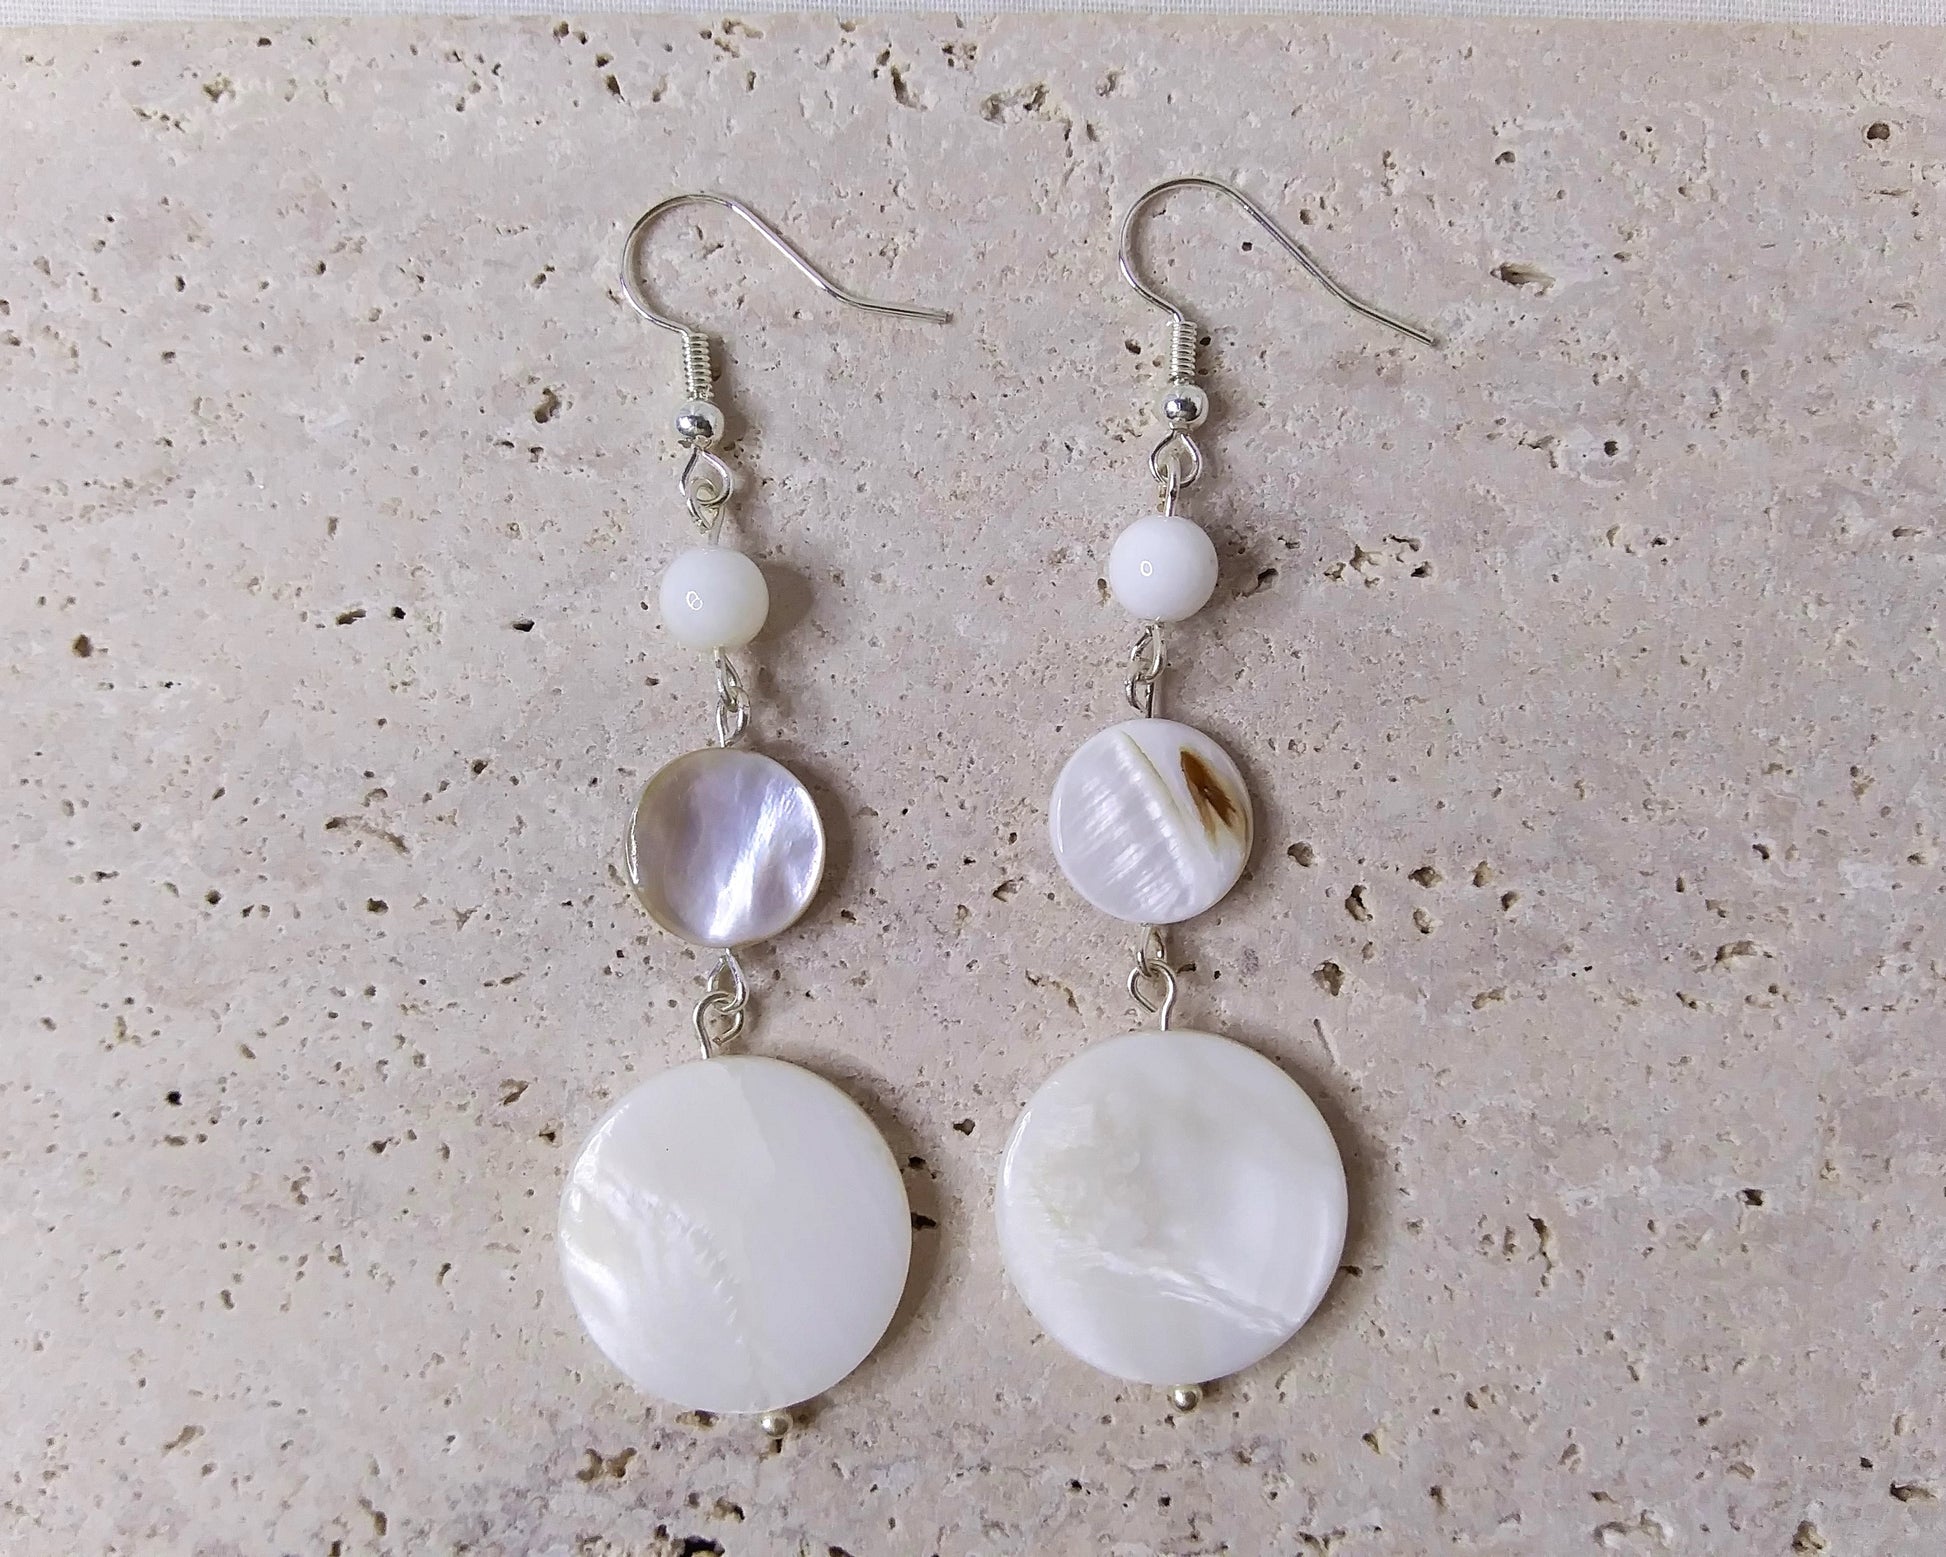 White Shell Bead earrings in silver